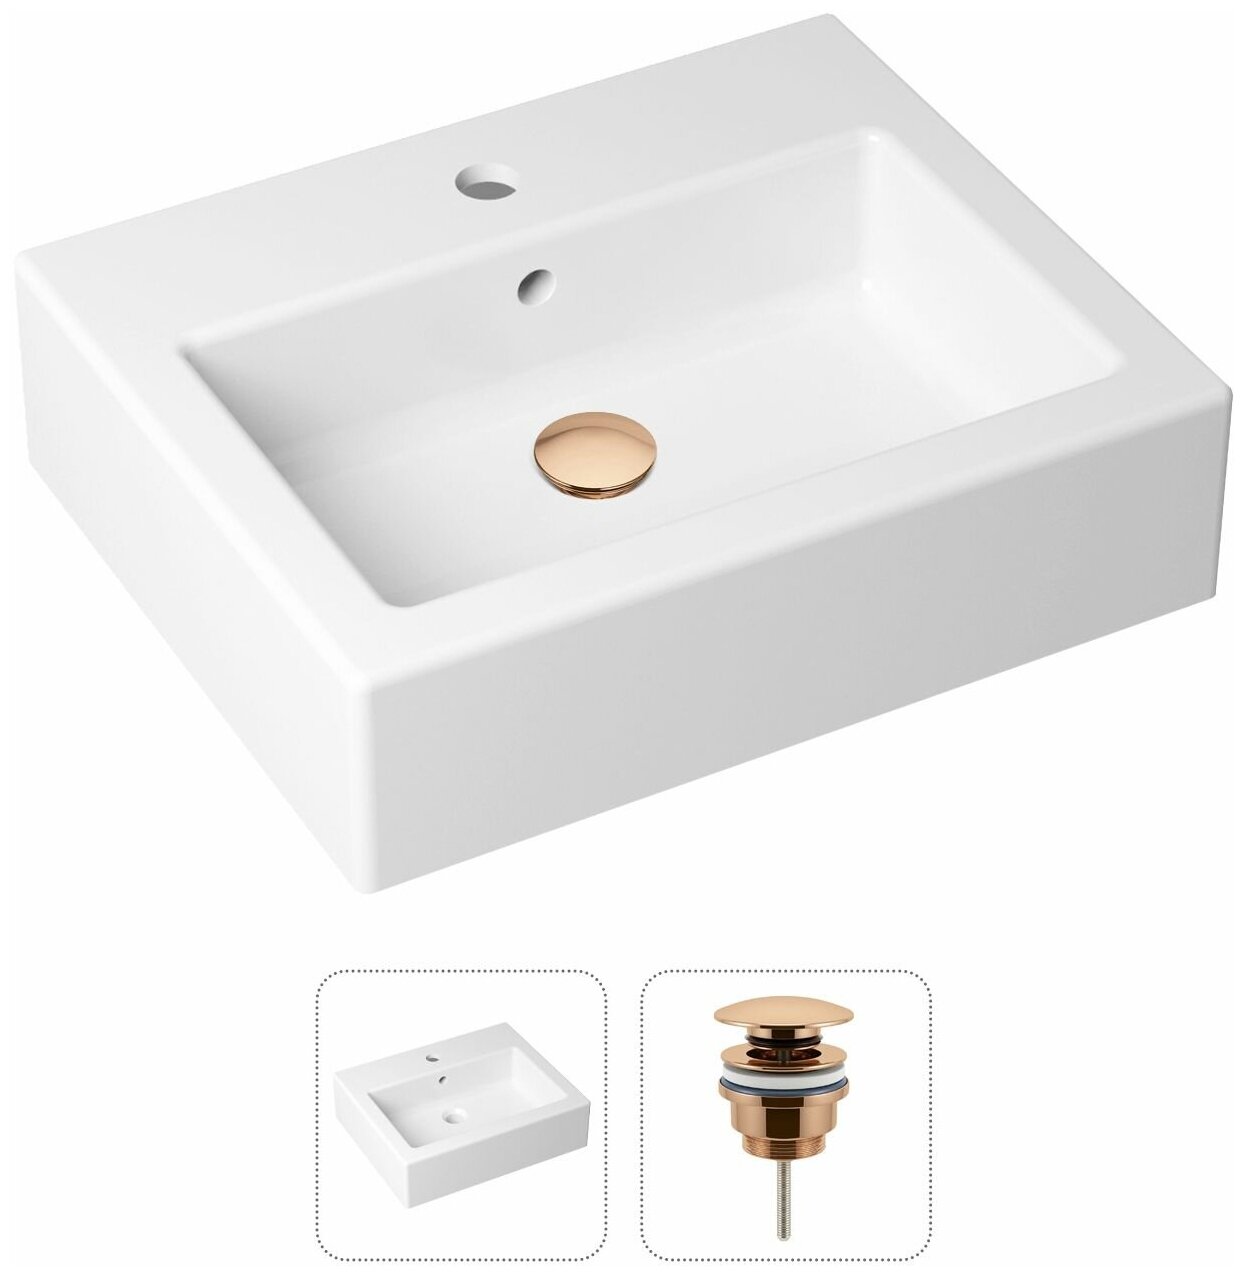 Комплект 2 в 1 Lavinia Boho Bathroom Sink 21520915: накладная фарфоровая раковина 50 см, донный клапан